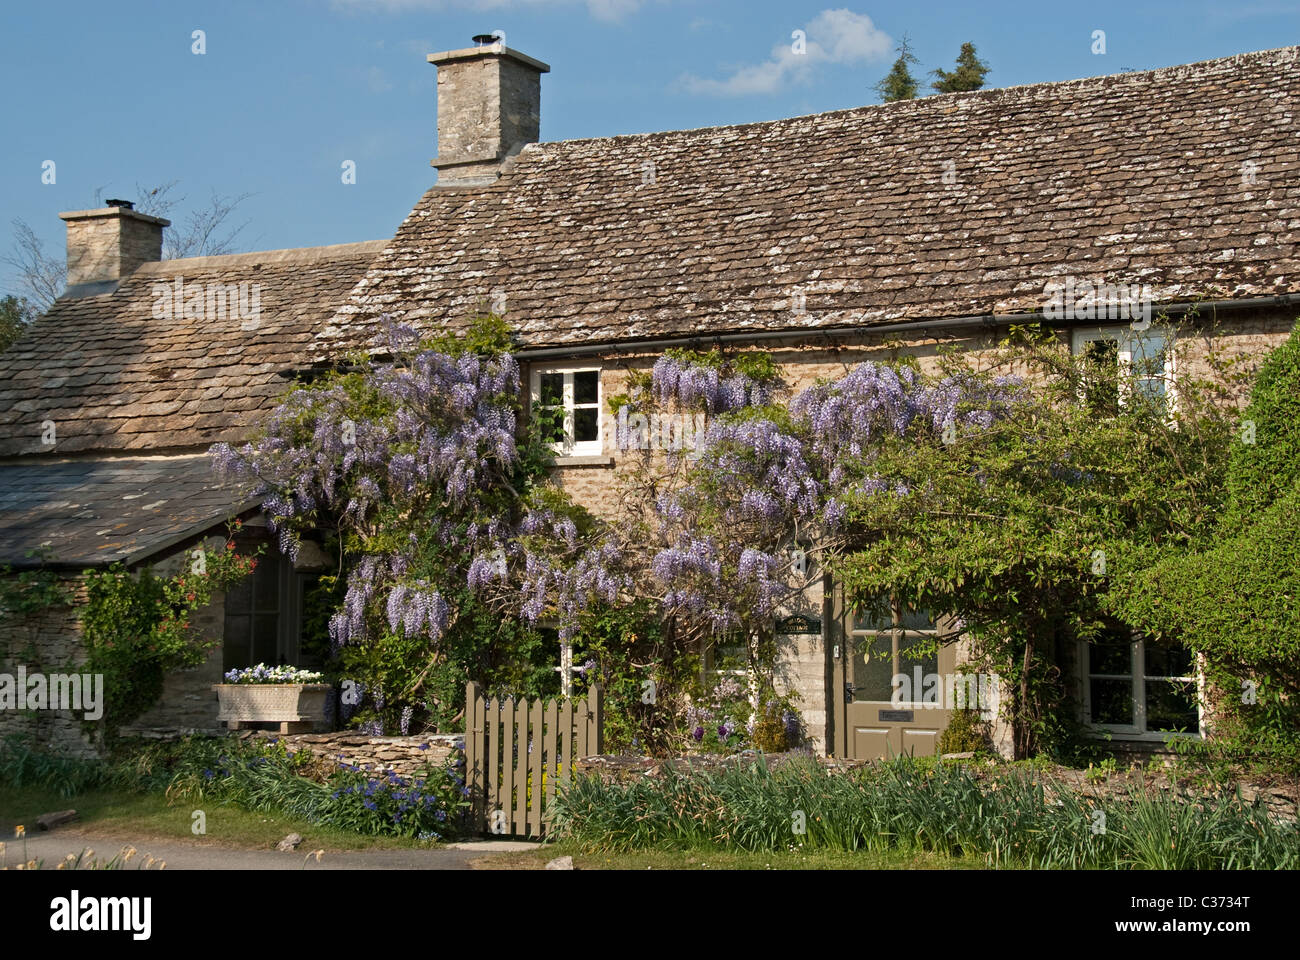 Vieille maison en pierre avec Glycine, Southrop, Gloucestershire. Cotswolds, Royaume-Uni. Banque D'Images